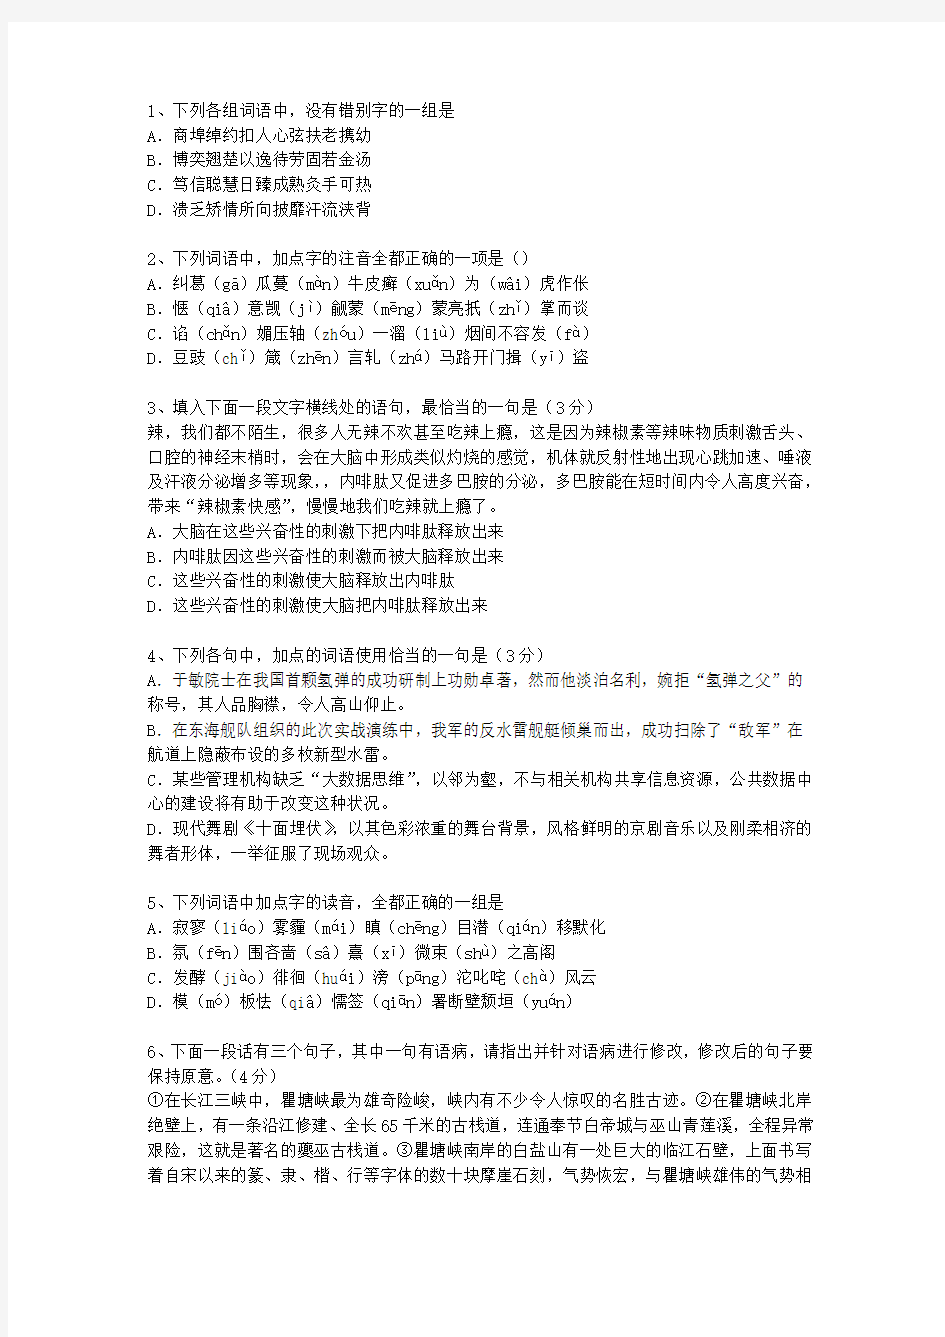 2014辽宁省语文大纲(答案详解版)考试重点和考试技巧